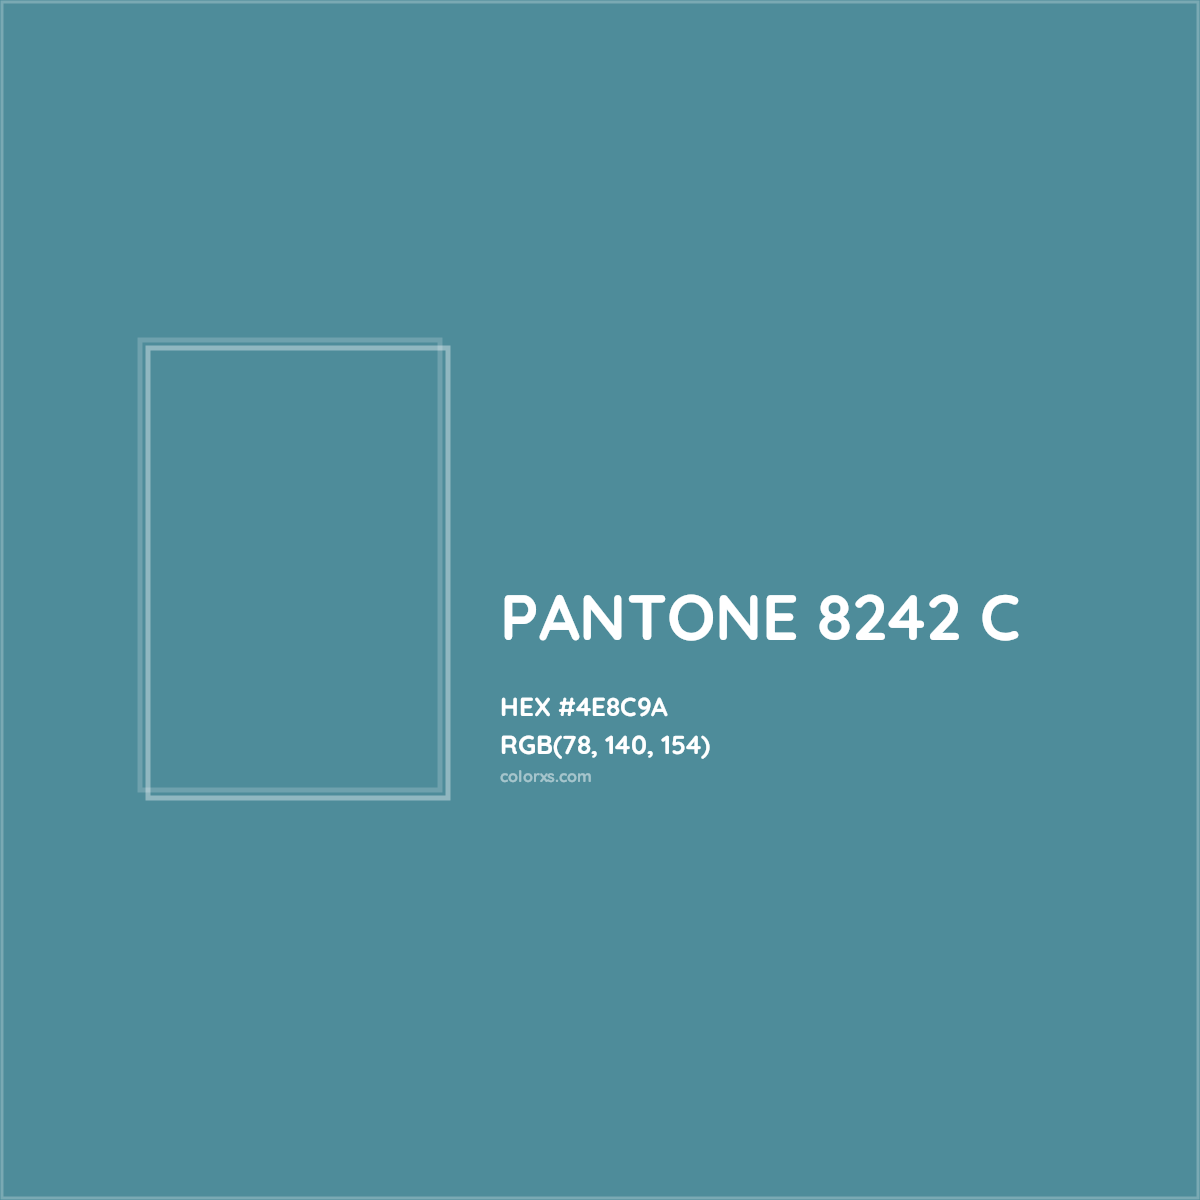 HEX #4E8C9A PANTONE 8242 C CMS Pantone PMS - Color Code